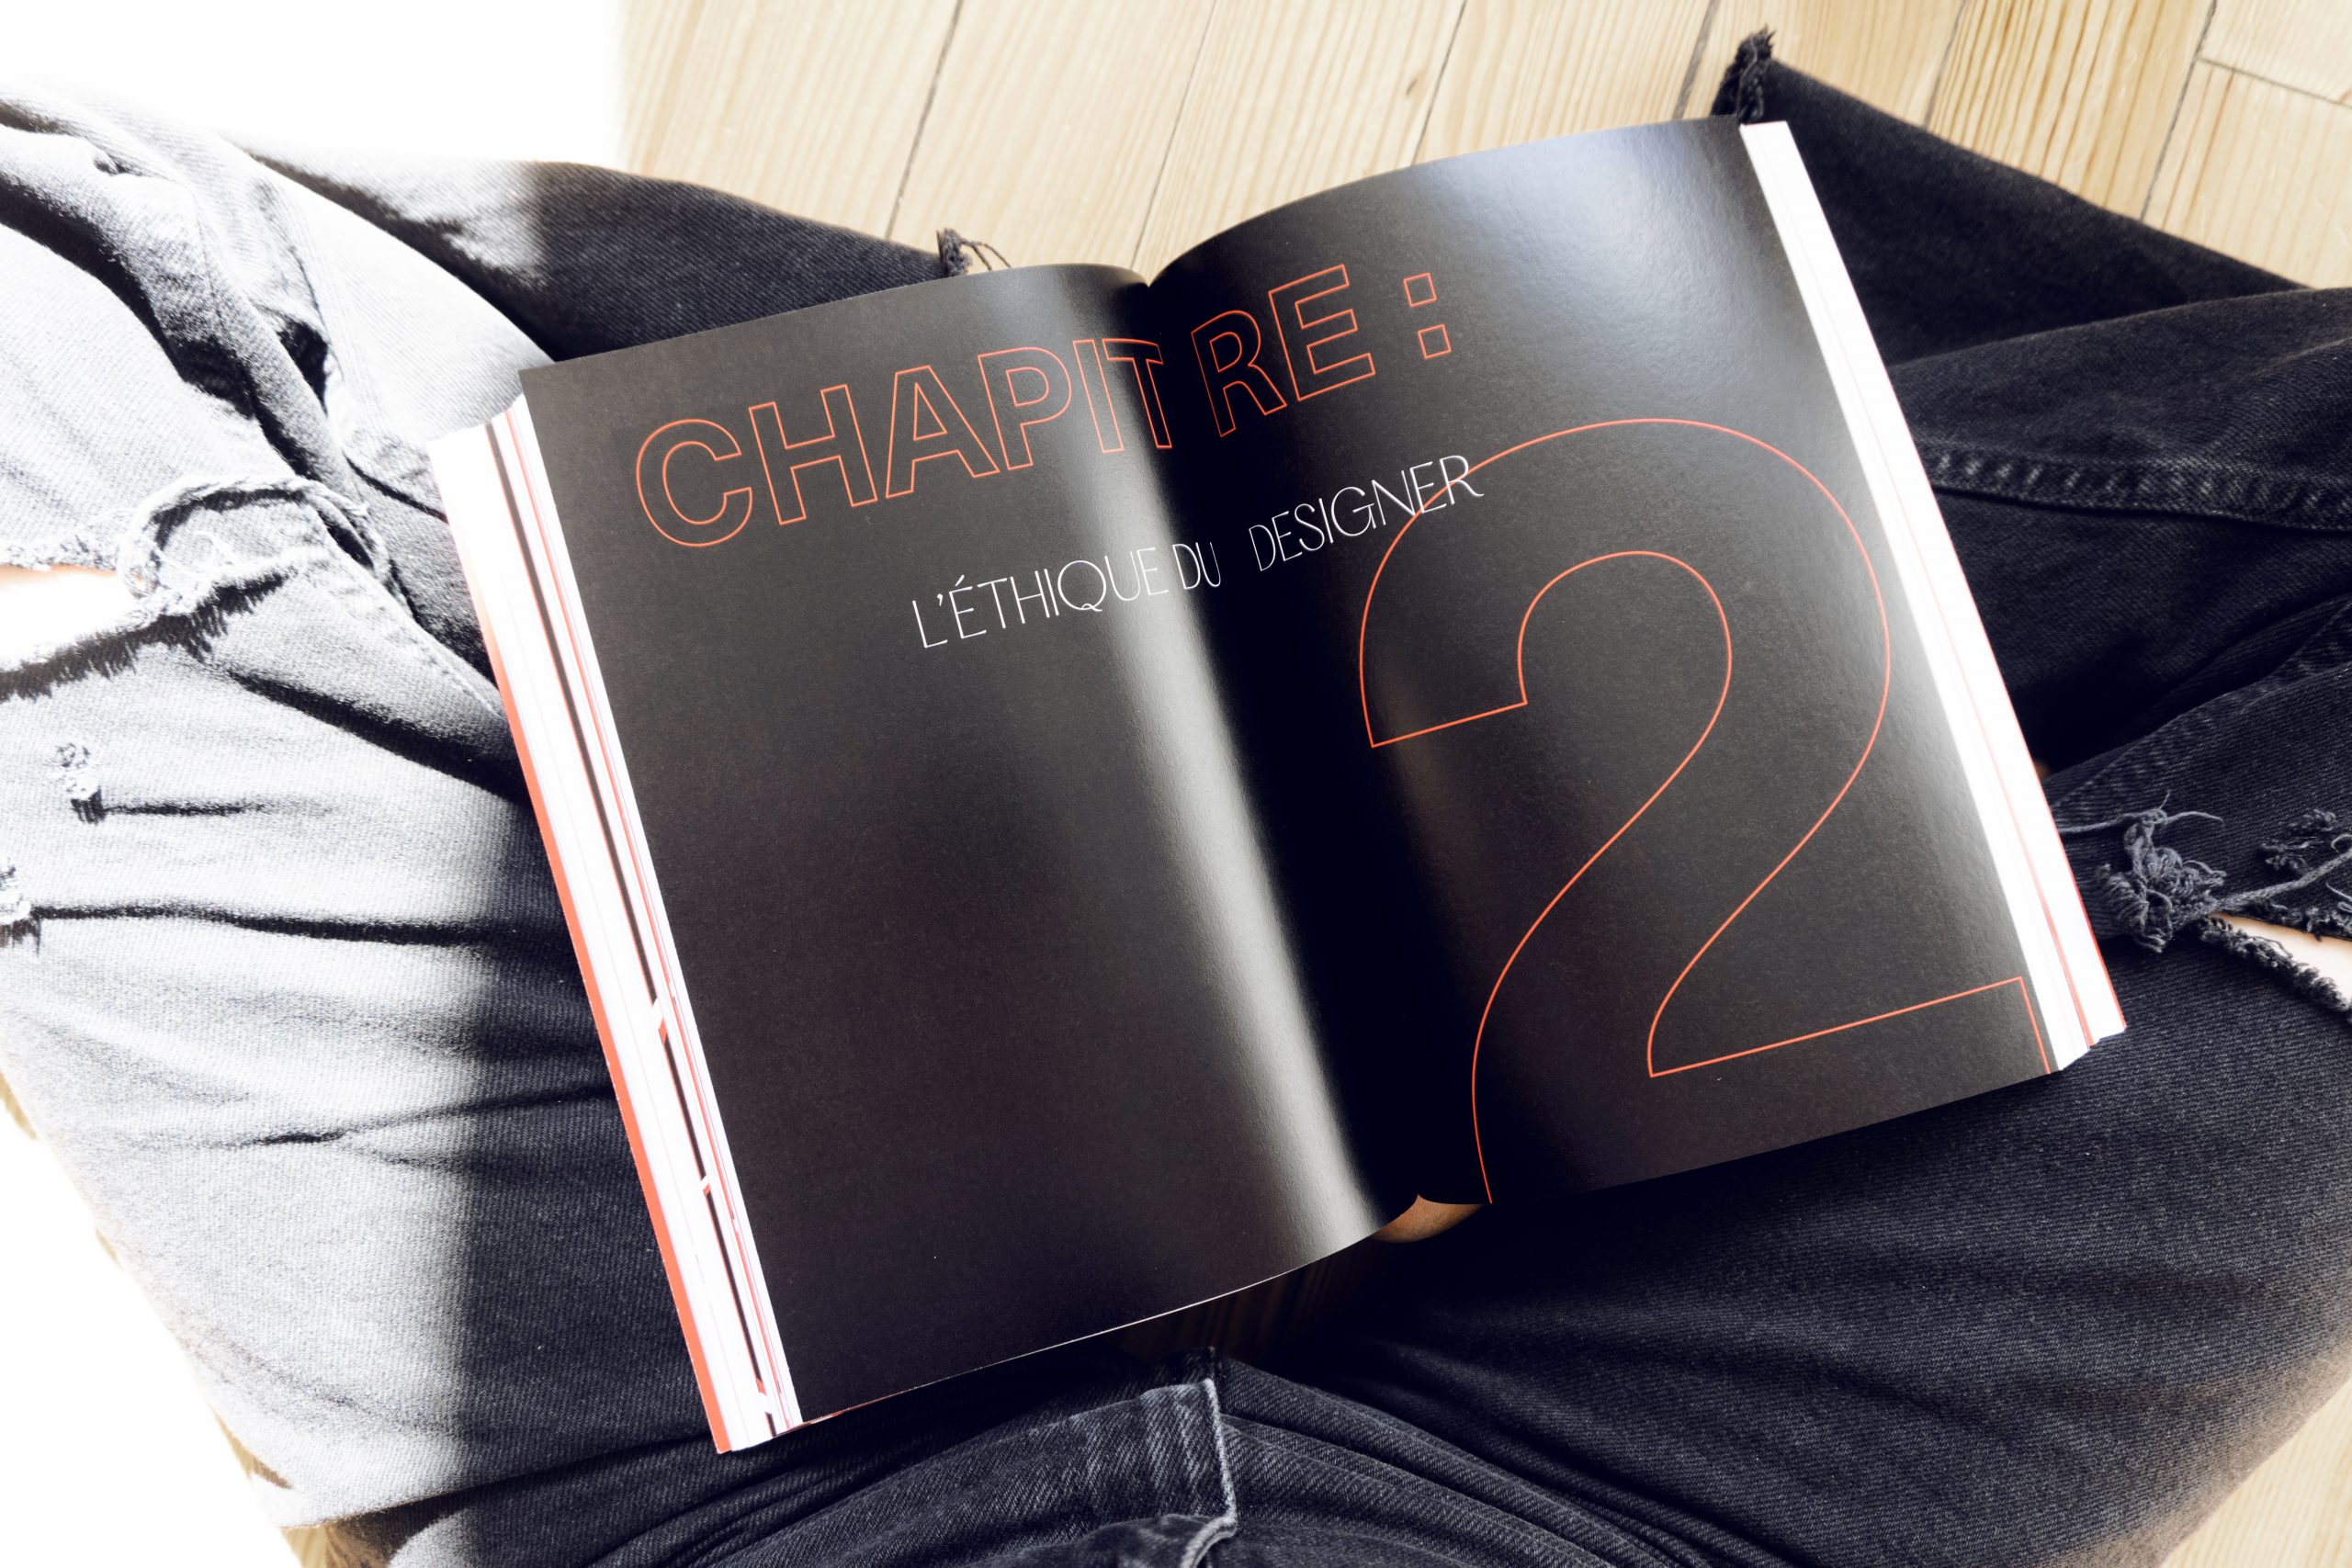 Visuel de l'intérieur du livre montrant la double page sur fond noir annonçant le deuxième chapitre sur l'éthique du designer.